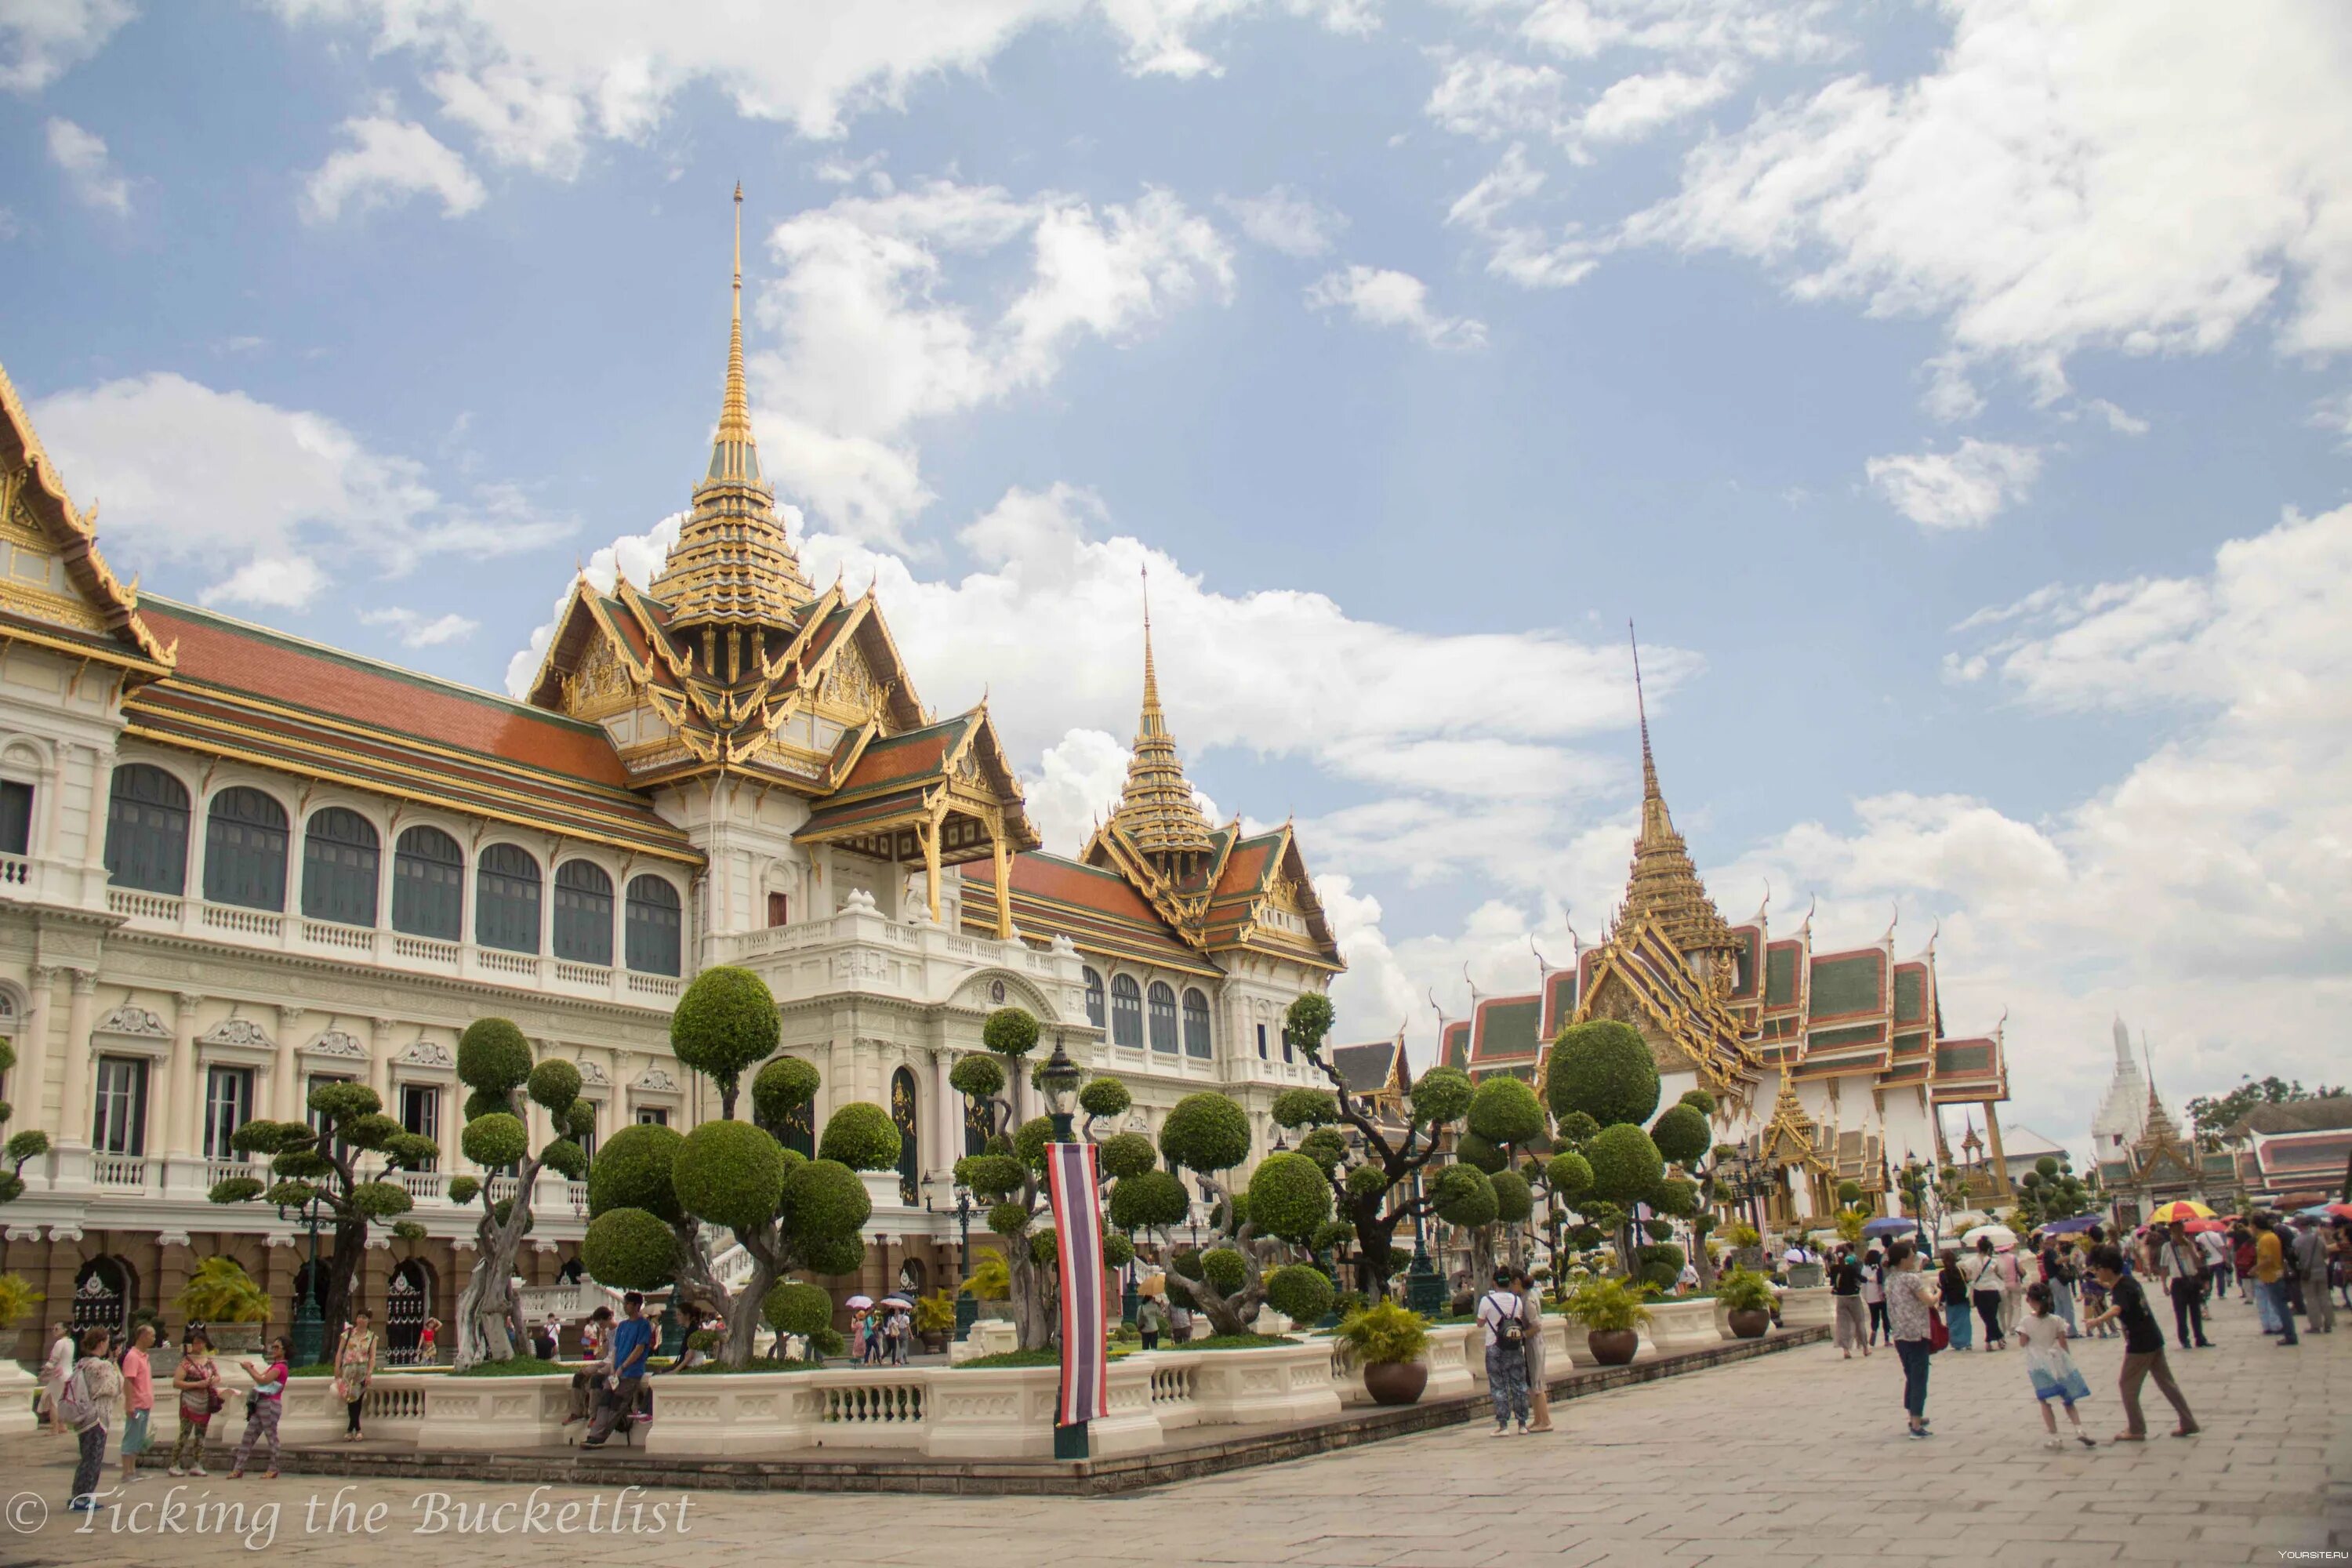 Столица бангкок государство. Королевский дворец в Бангкоке. Столица Тайланда. Бангкок столица Таиланда. Королевский дворец — резиденция тайского короля Бангкок.